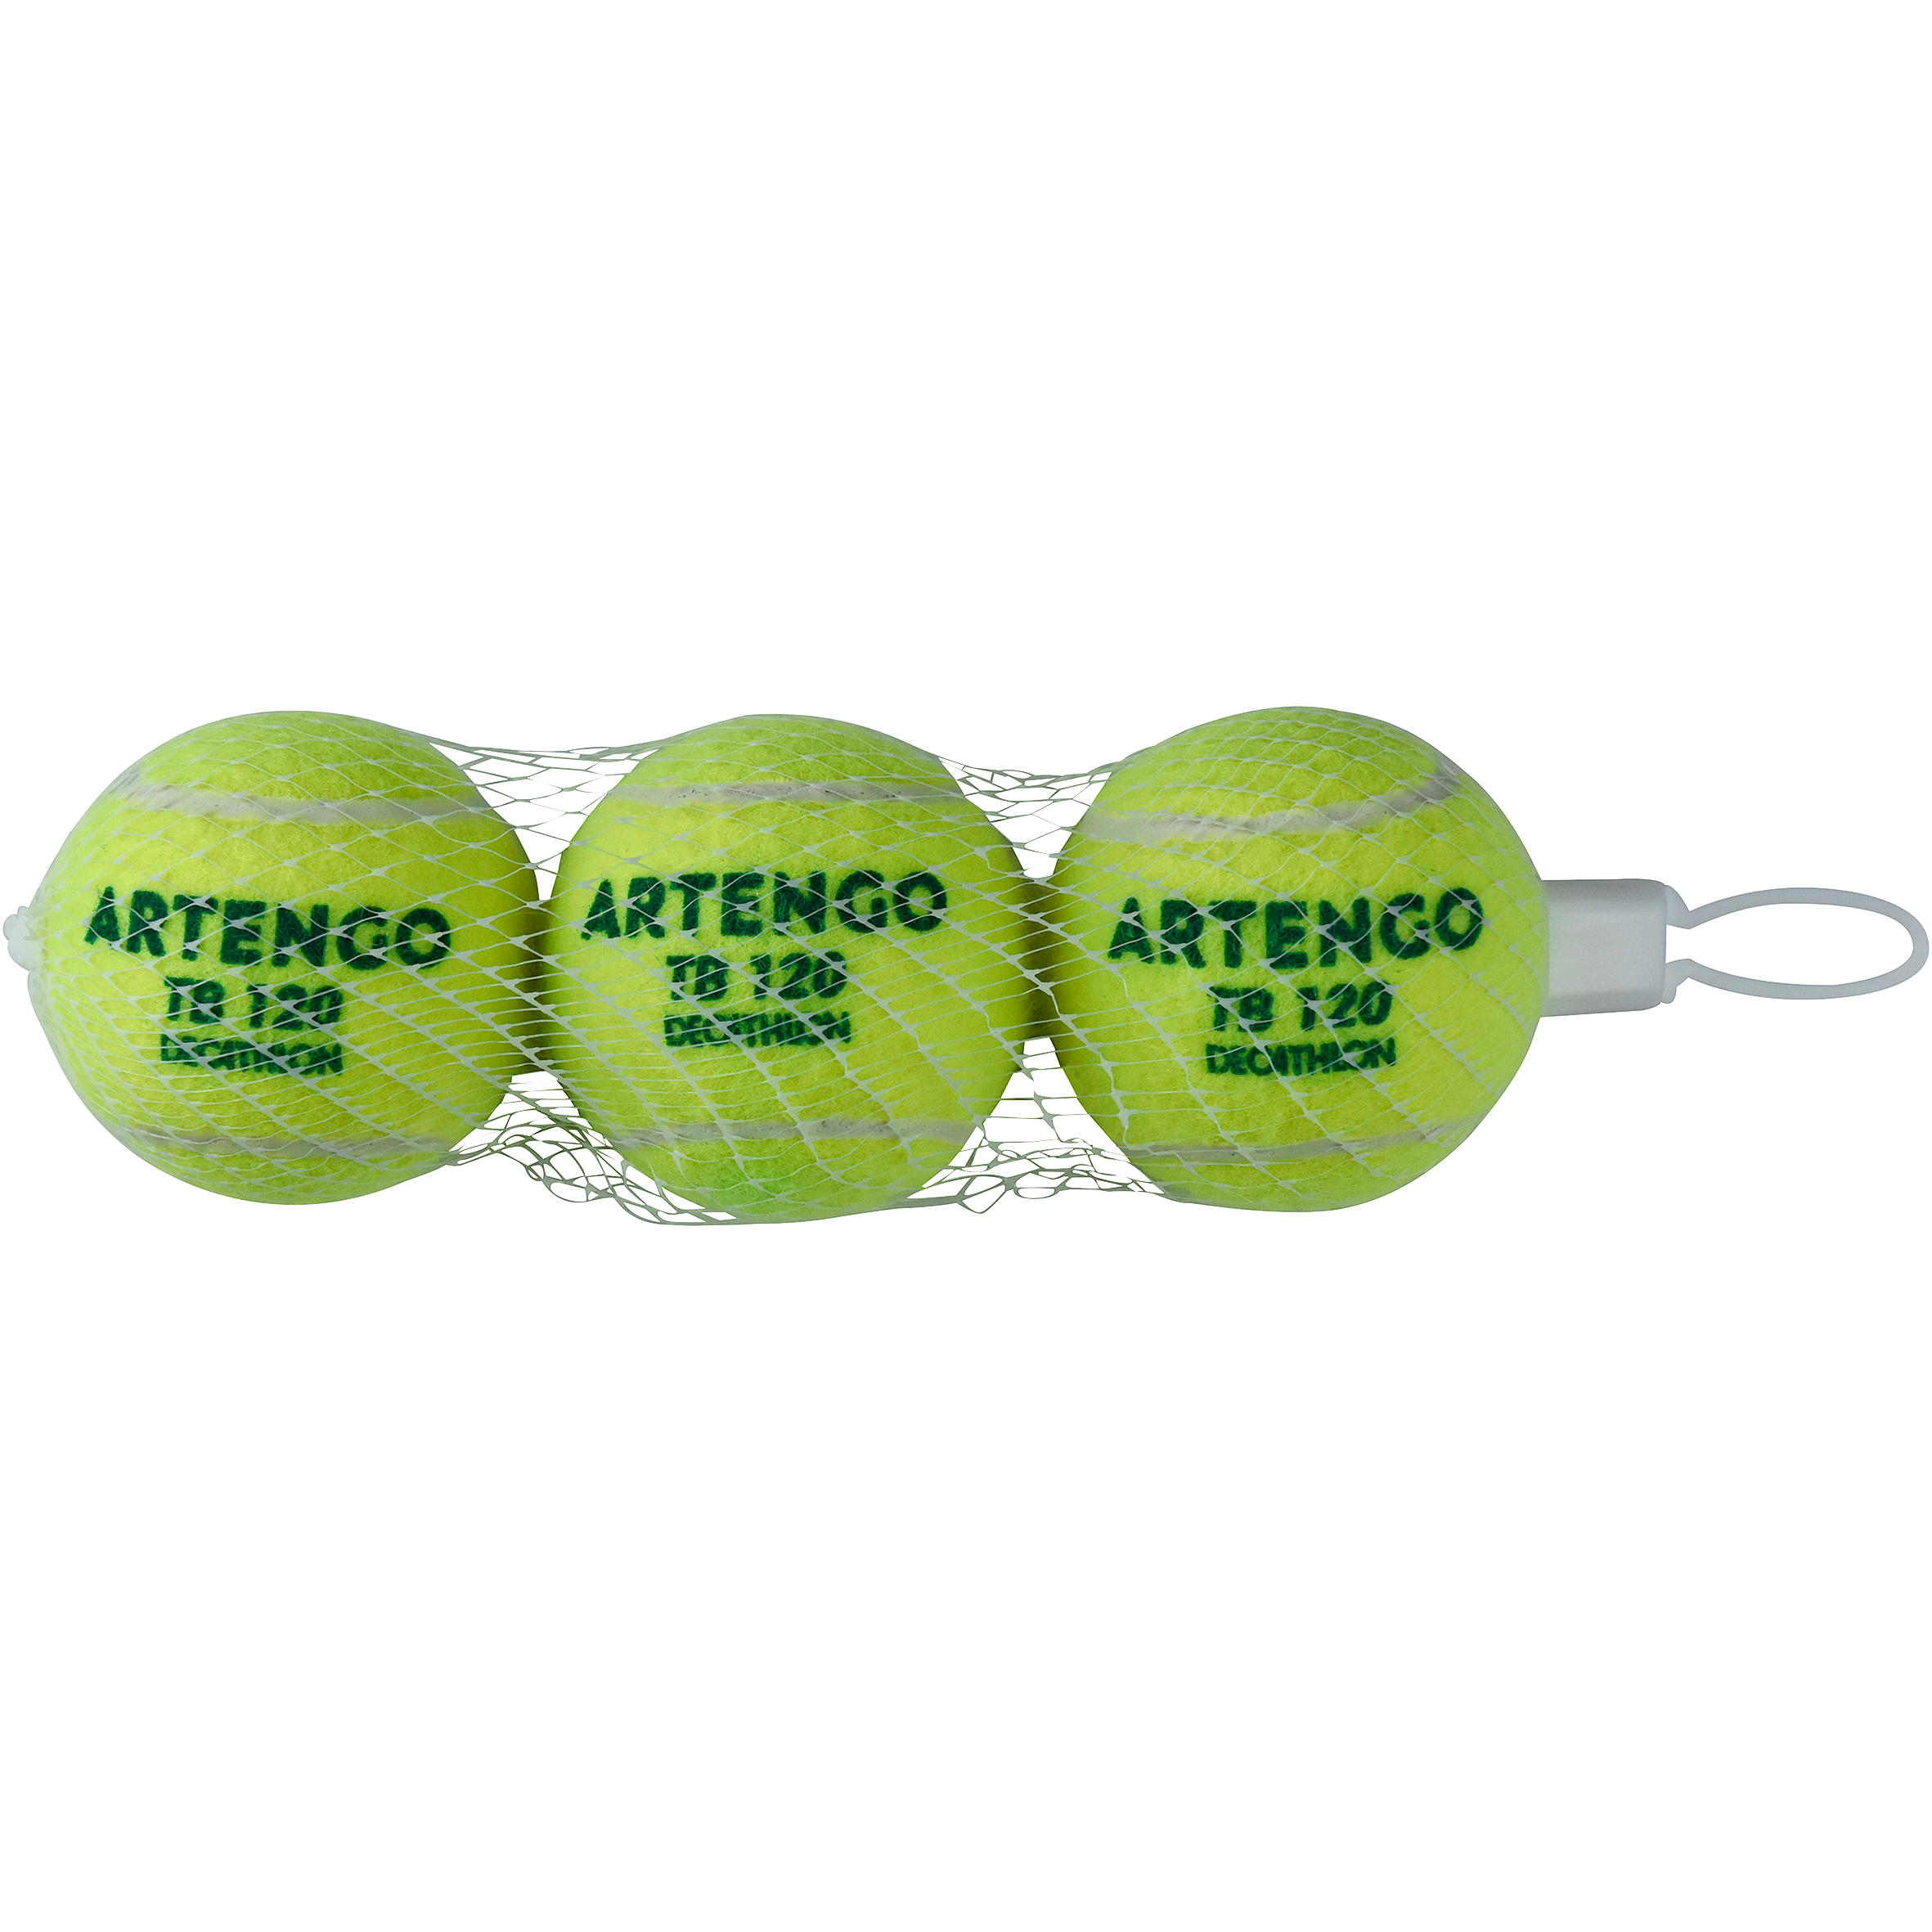 Artengo Tennis Balls Buy Online 